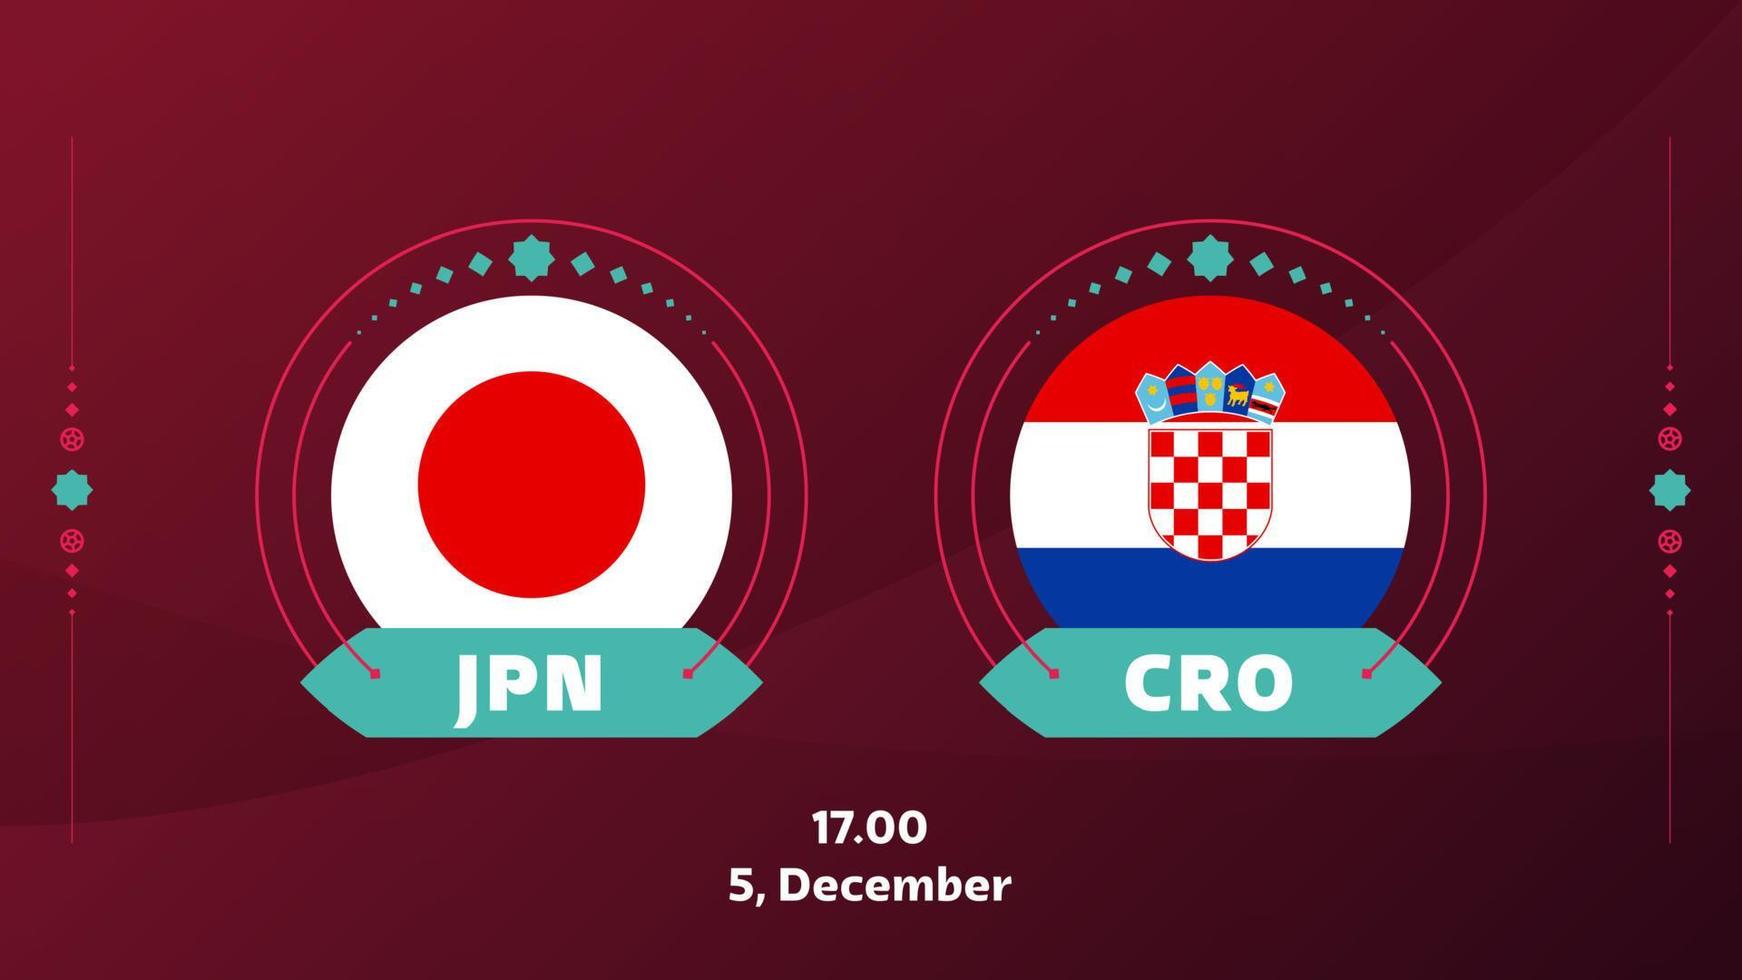 Japan Kroatië playoff ronde van 16 bij elkaar passen Amerikaans voetbal 2022. 2022 wereld Amerikaans voetbal kampioenschap bij elkaar passen versus teams intro sport achtergrond, kampioenschap wedstrijd poster, vector illustratie